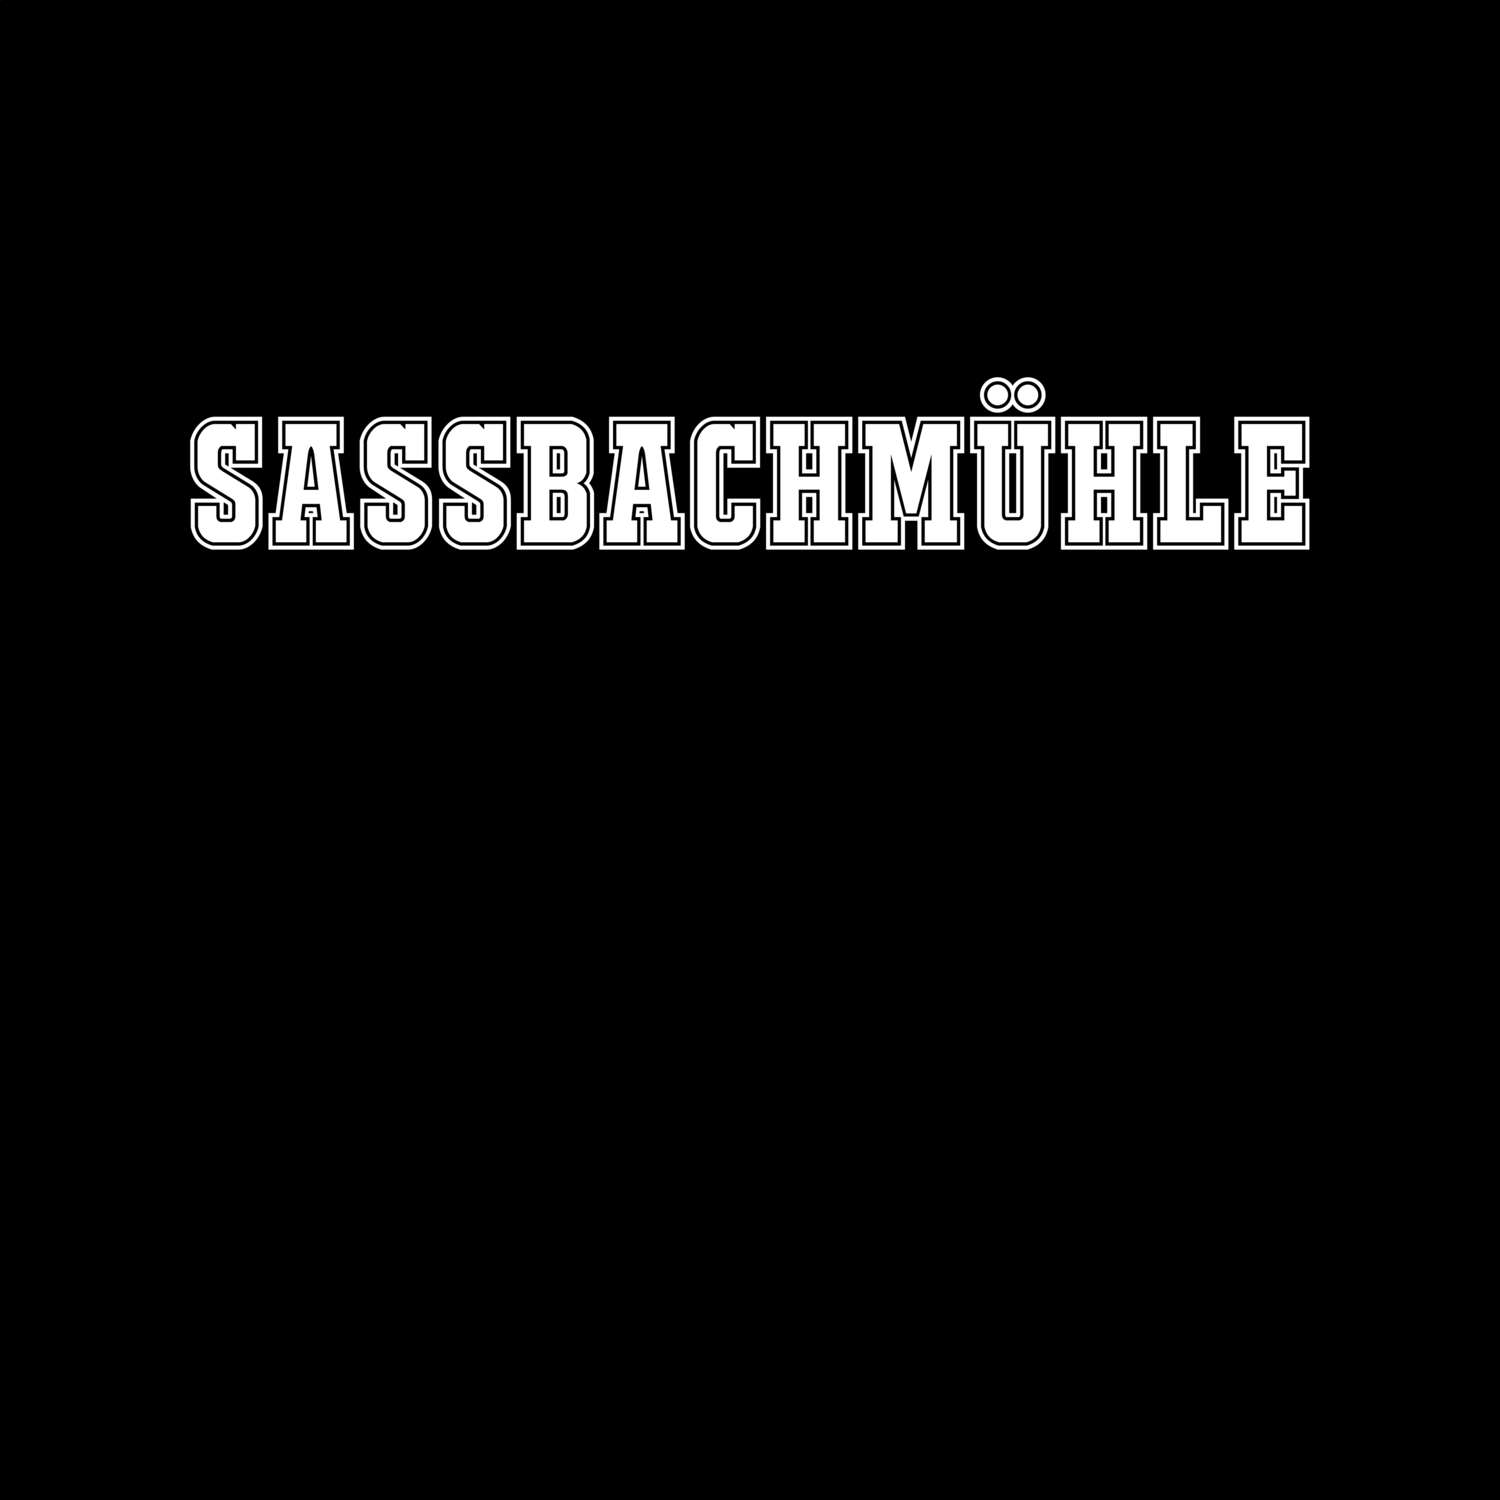 Saßbachmühle T-Shirt »Classic«